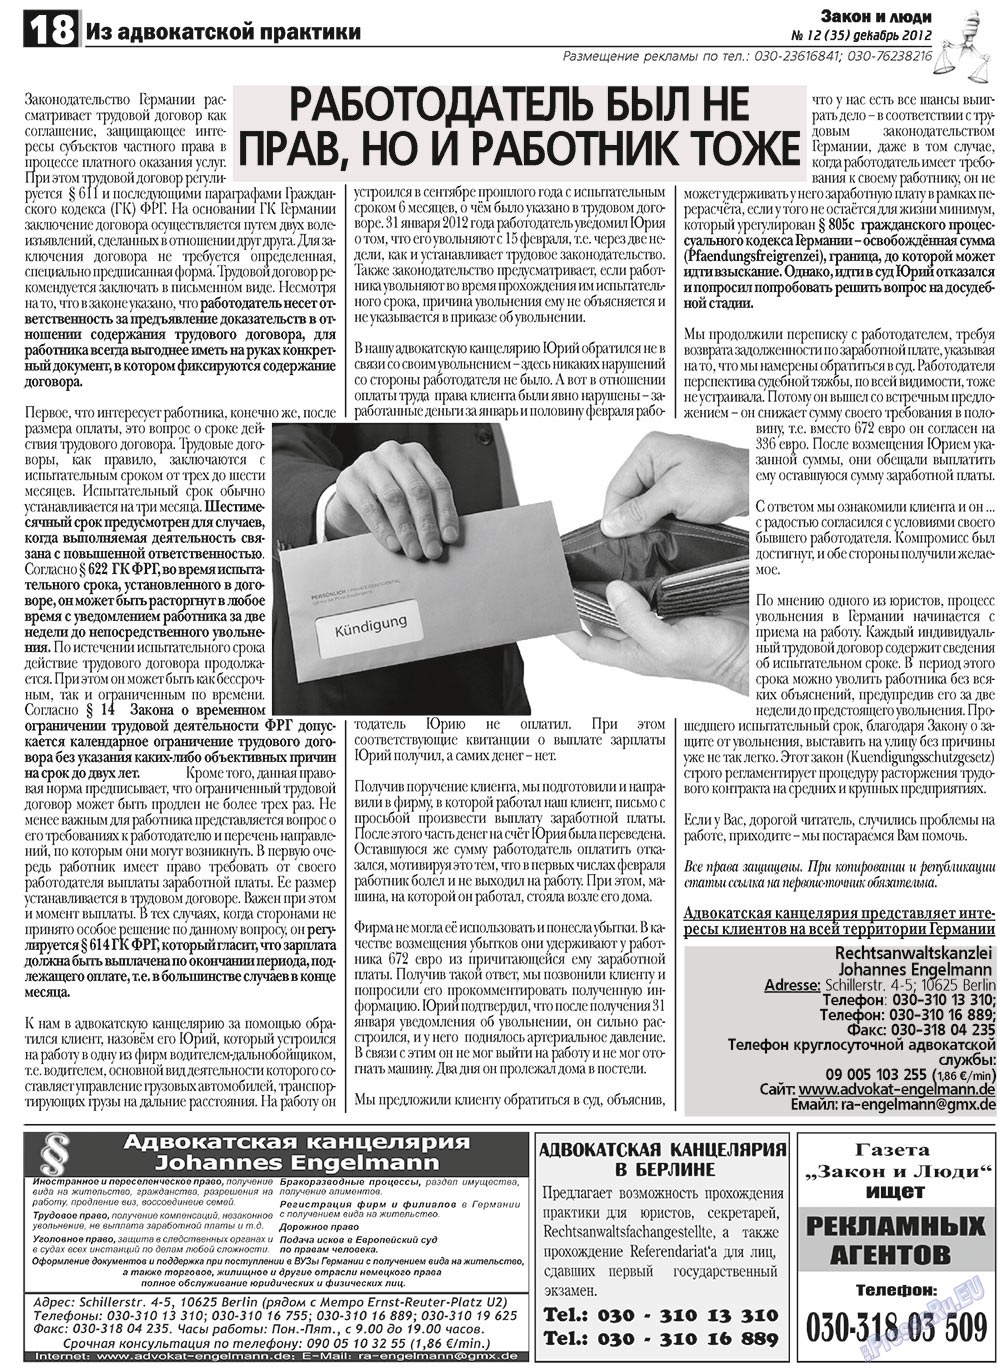 Закон и люди, газета. 2012 №12 стр.18